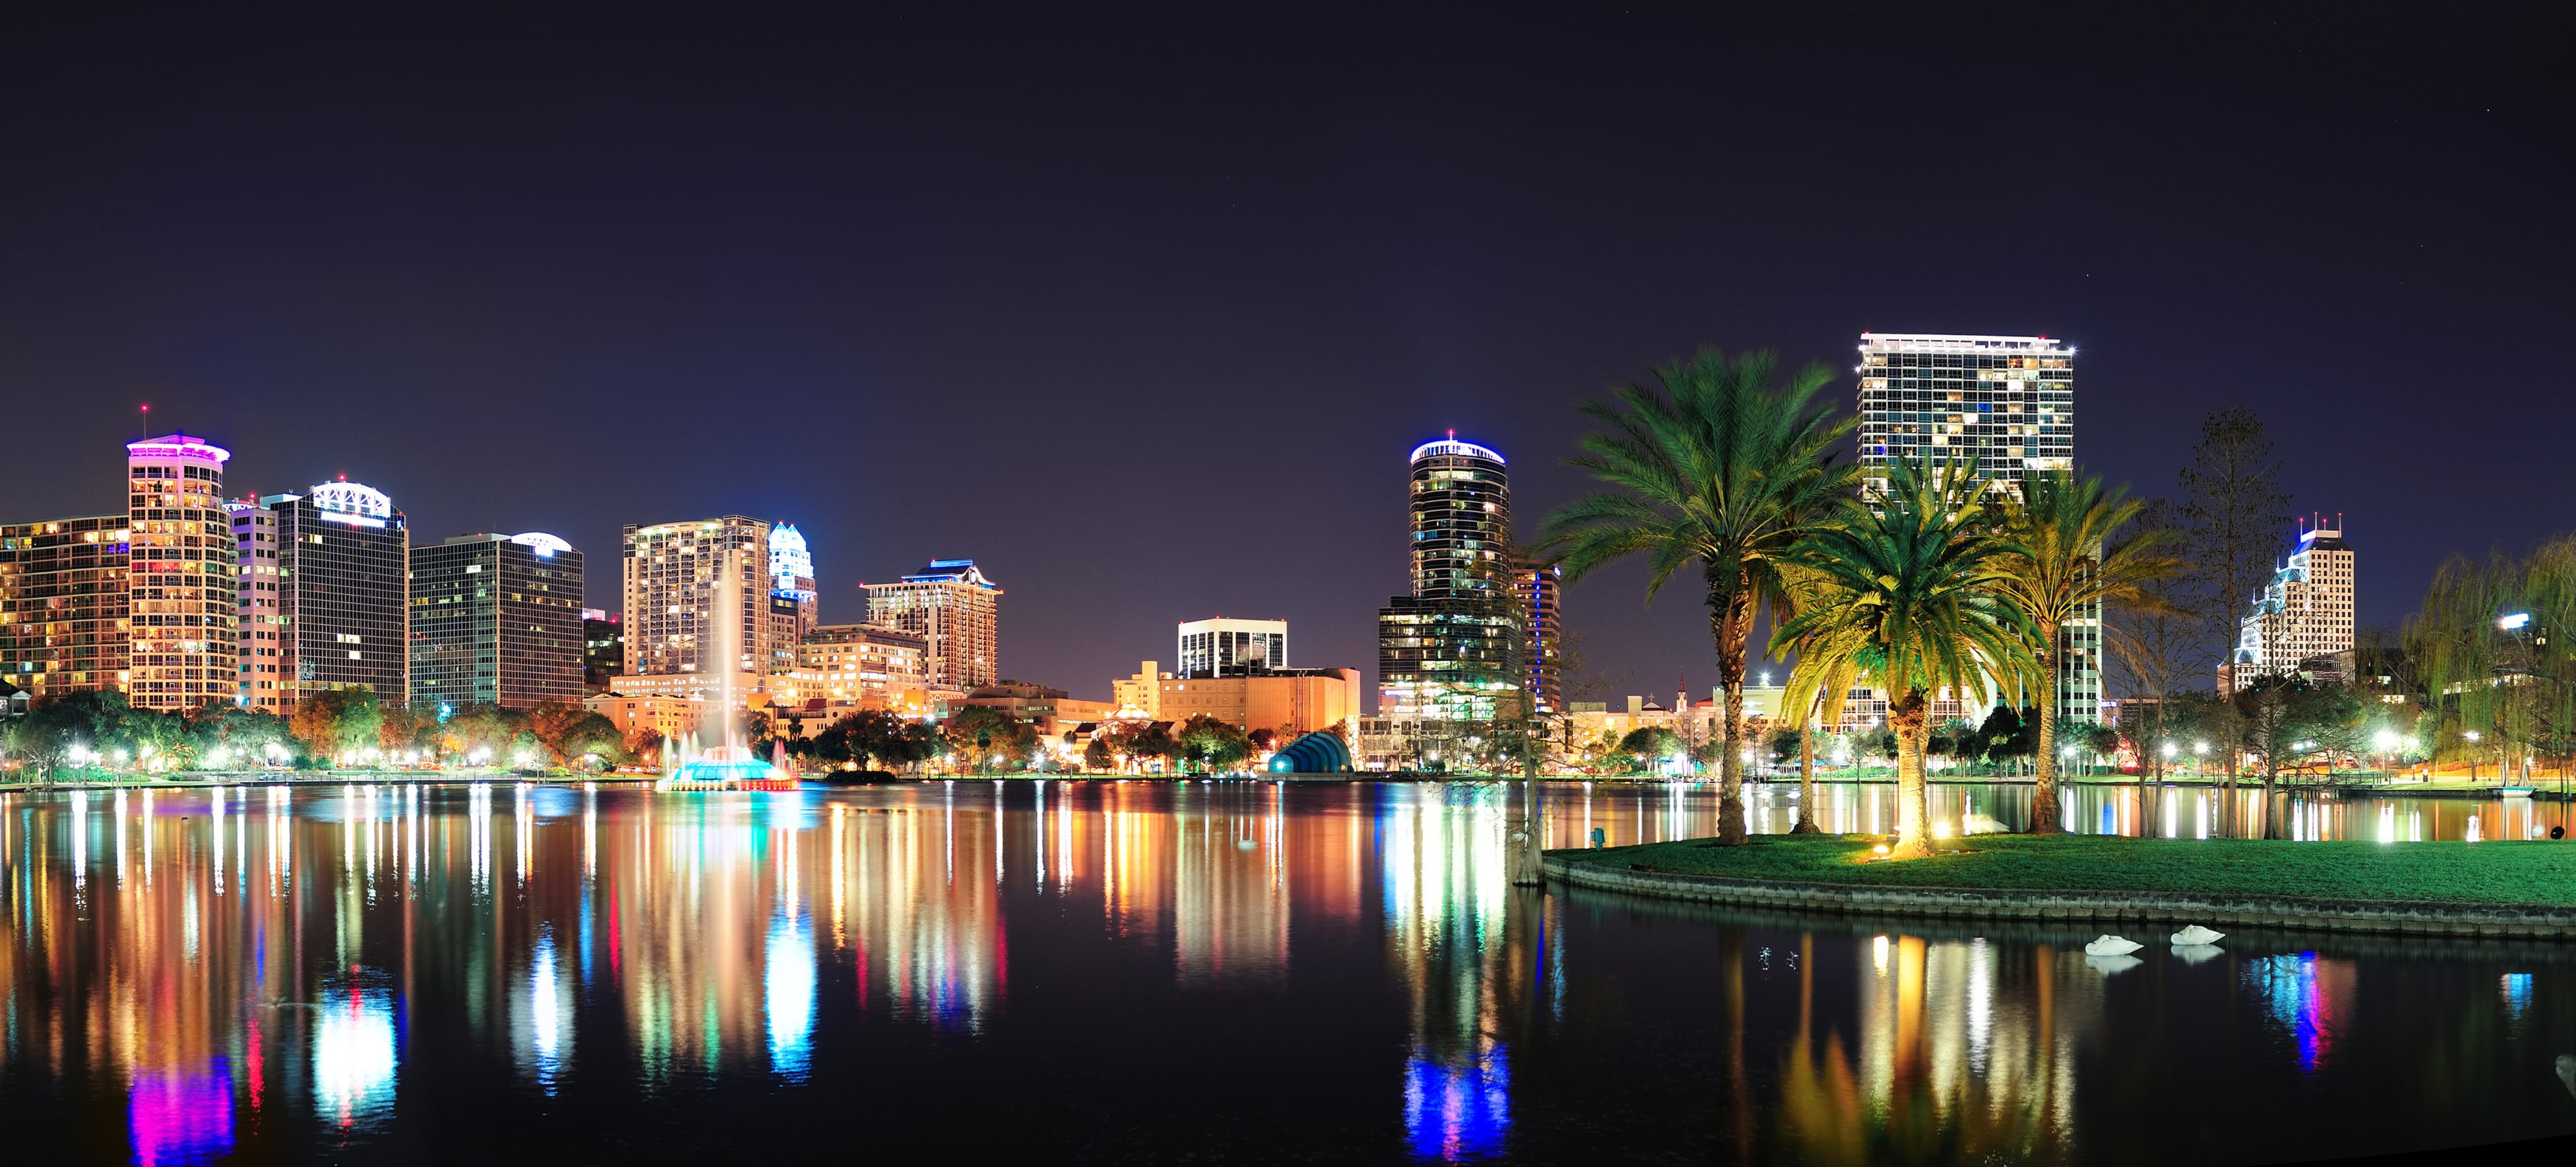 Orlando-at-night-3500x1585.jpeg